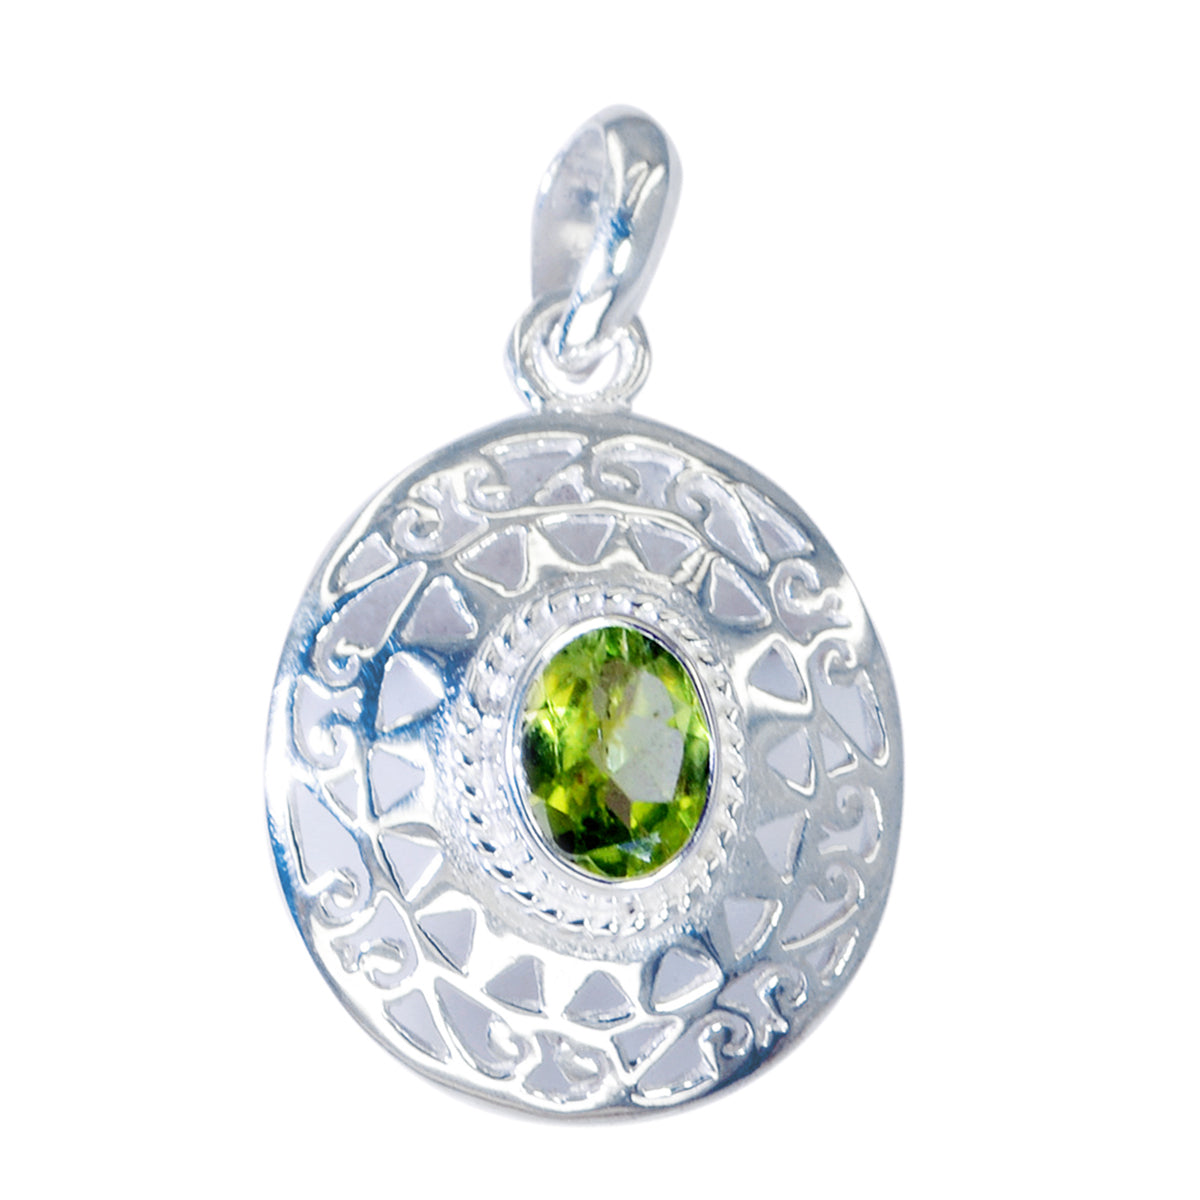 RIYO красивый круглый граненый зеленый перидот с драгоценным камнем, серебряный кулон в подарок другу